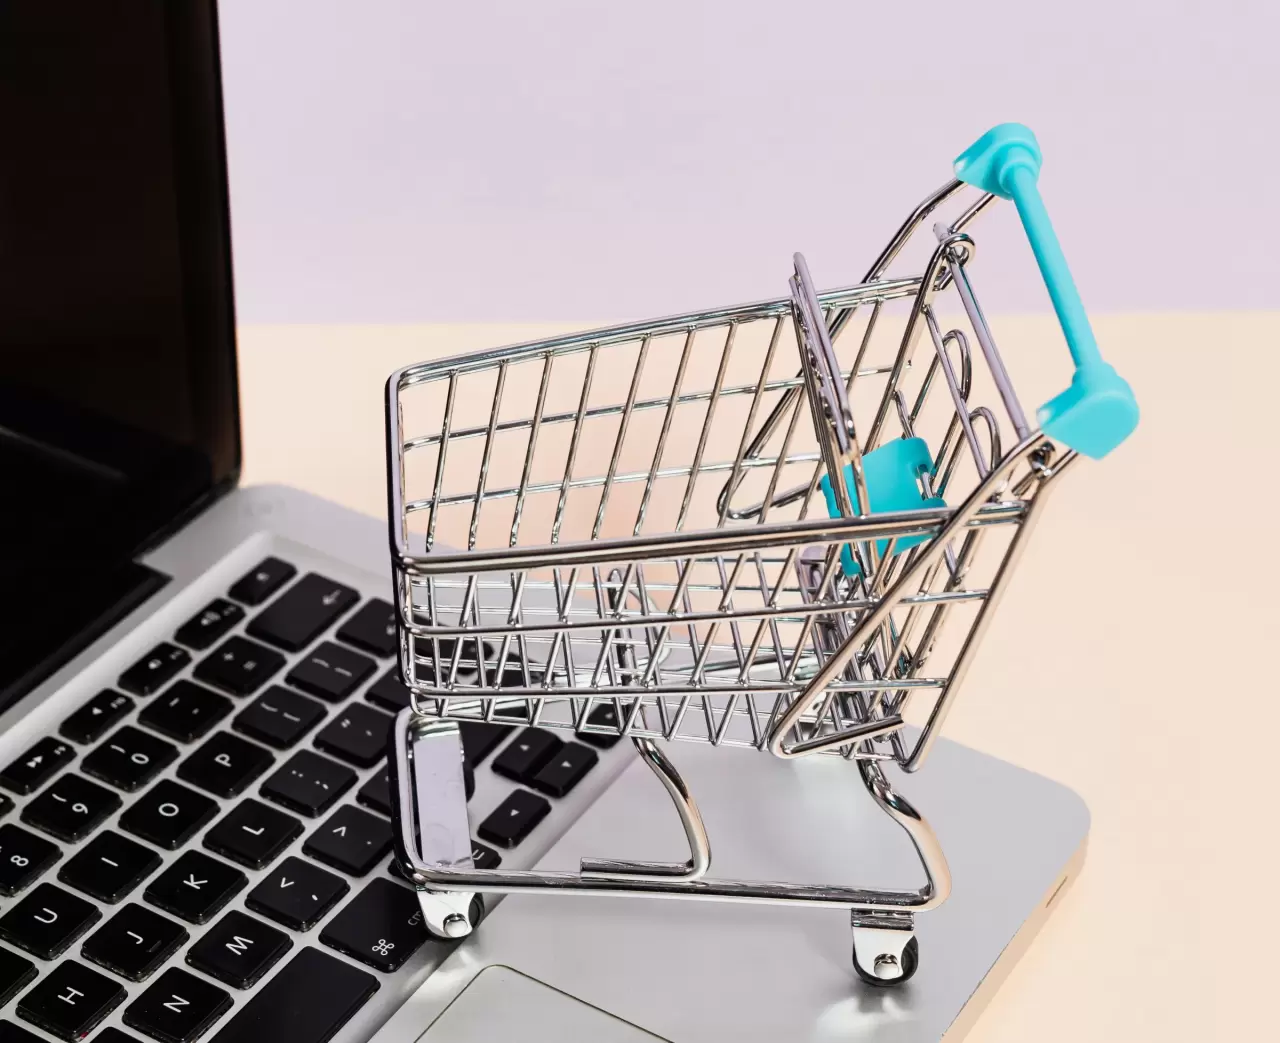 Hokodo lanceert Shopify-plug-in waarmee B2B-handelaren klanten handelskrediet kunnen aanbieden img#1